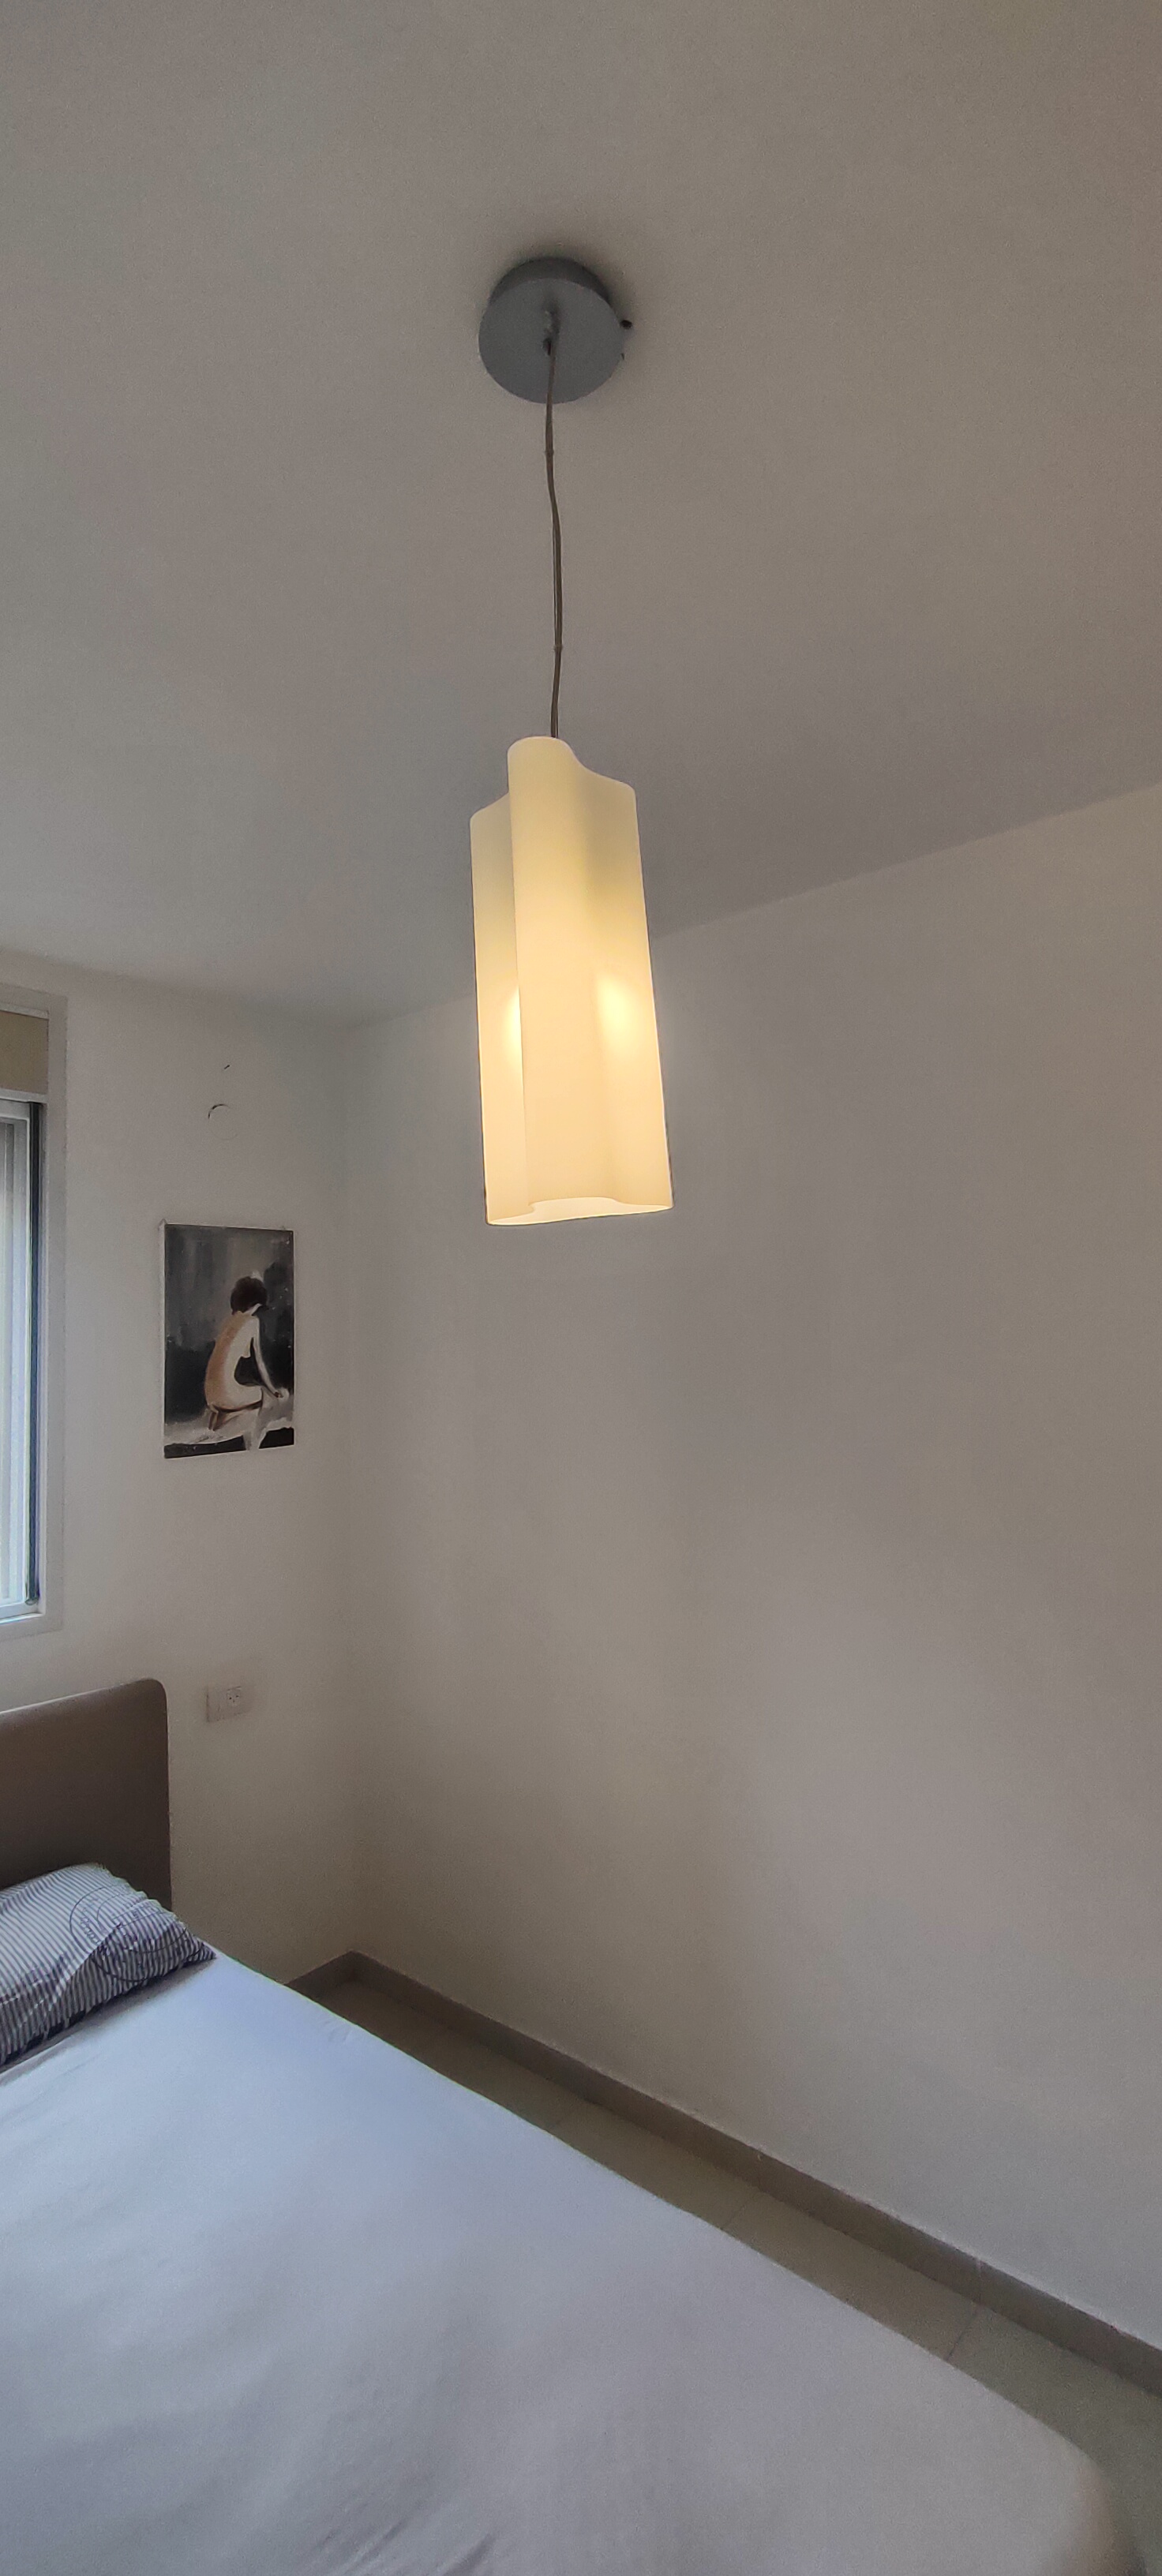 תמונה 3 ,תאורה  למכירה בנתניה תכולת דירה  שונות